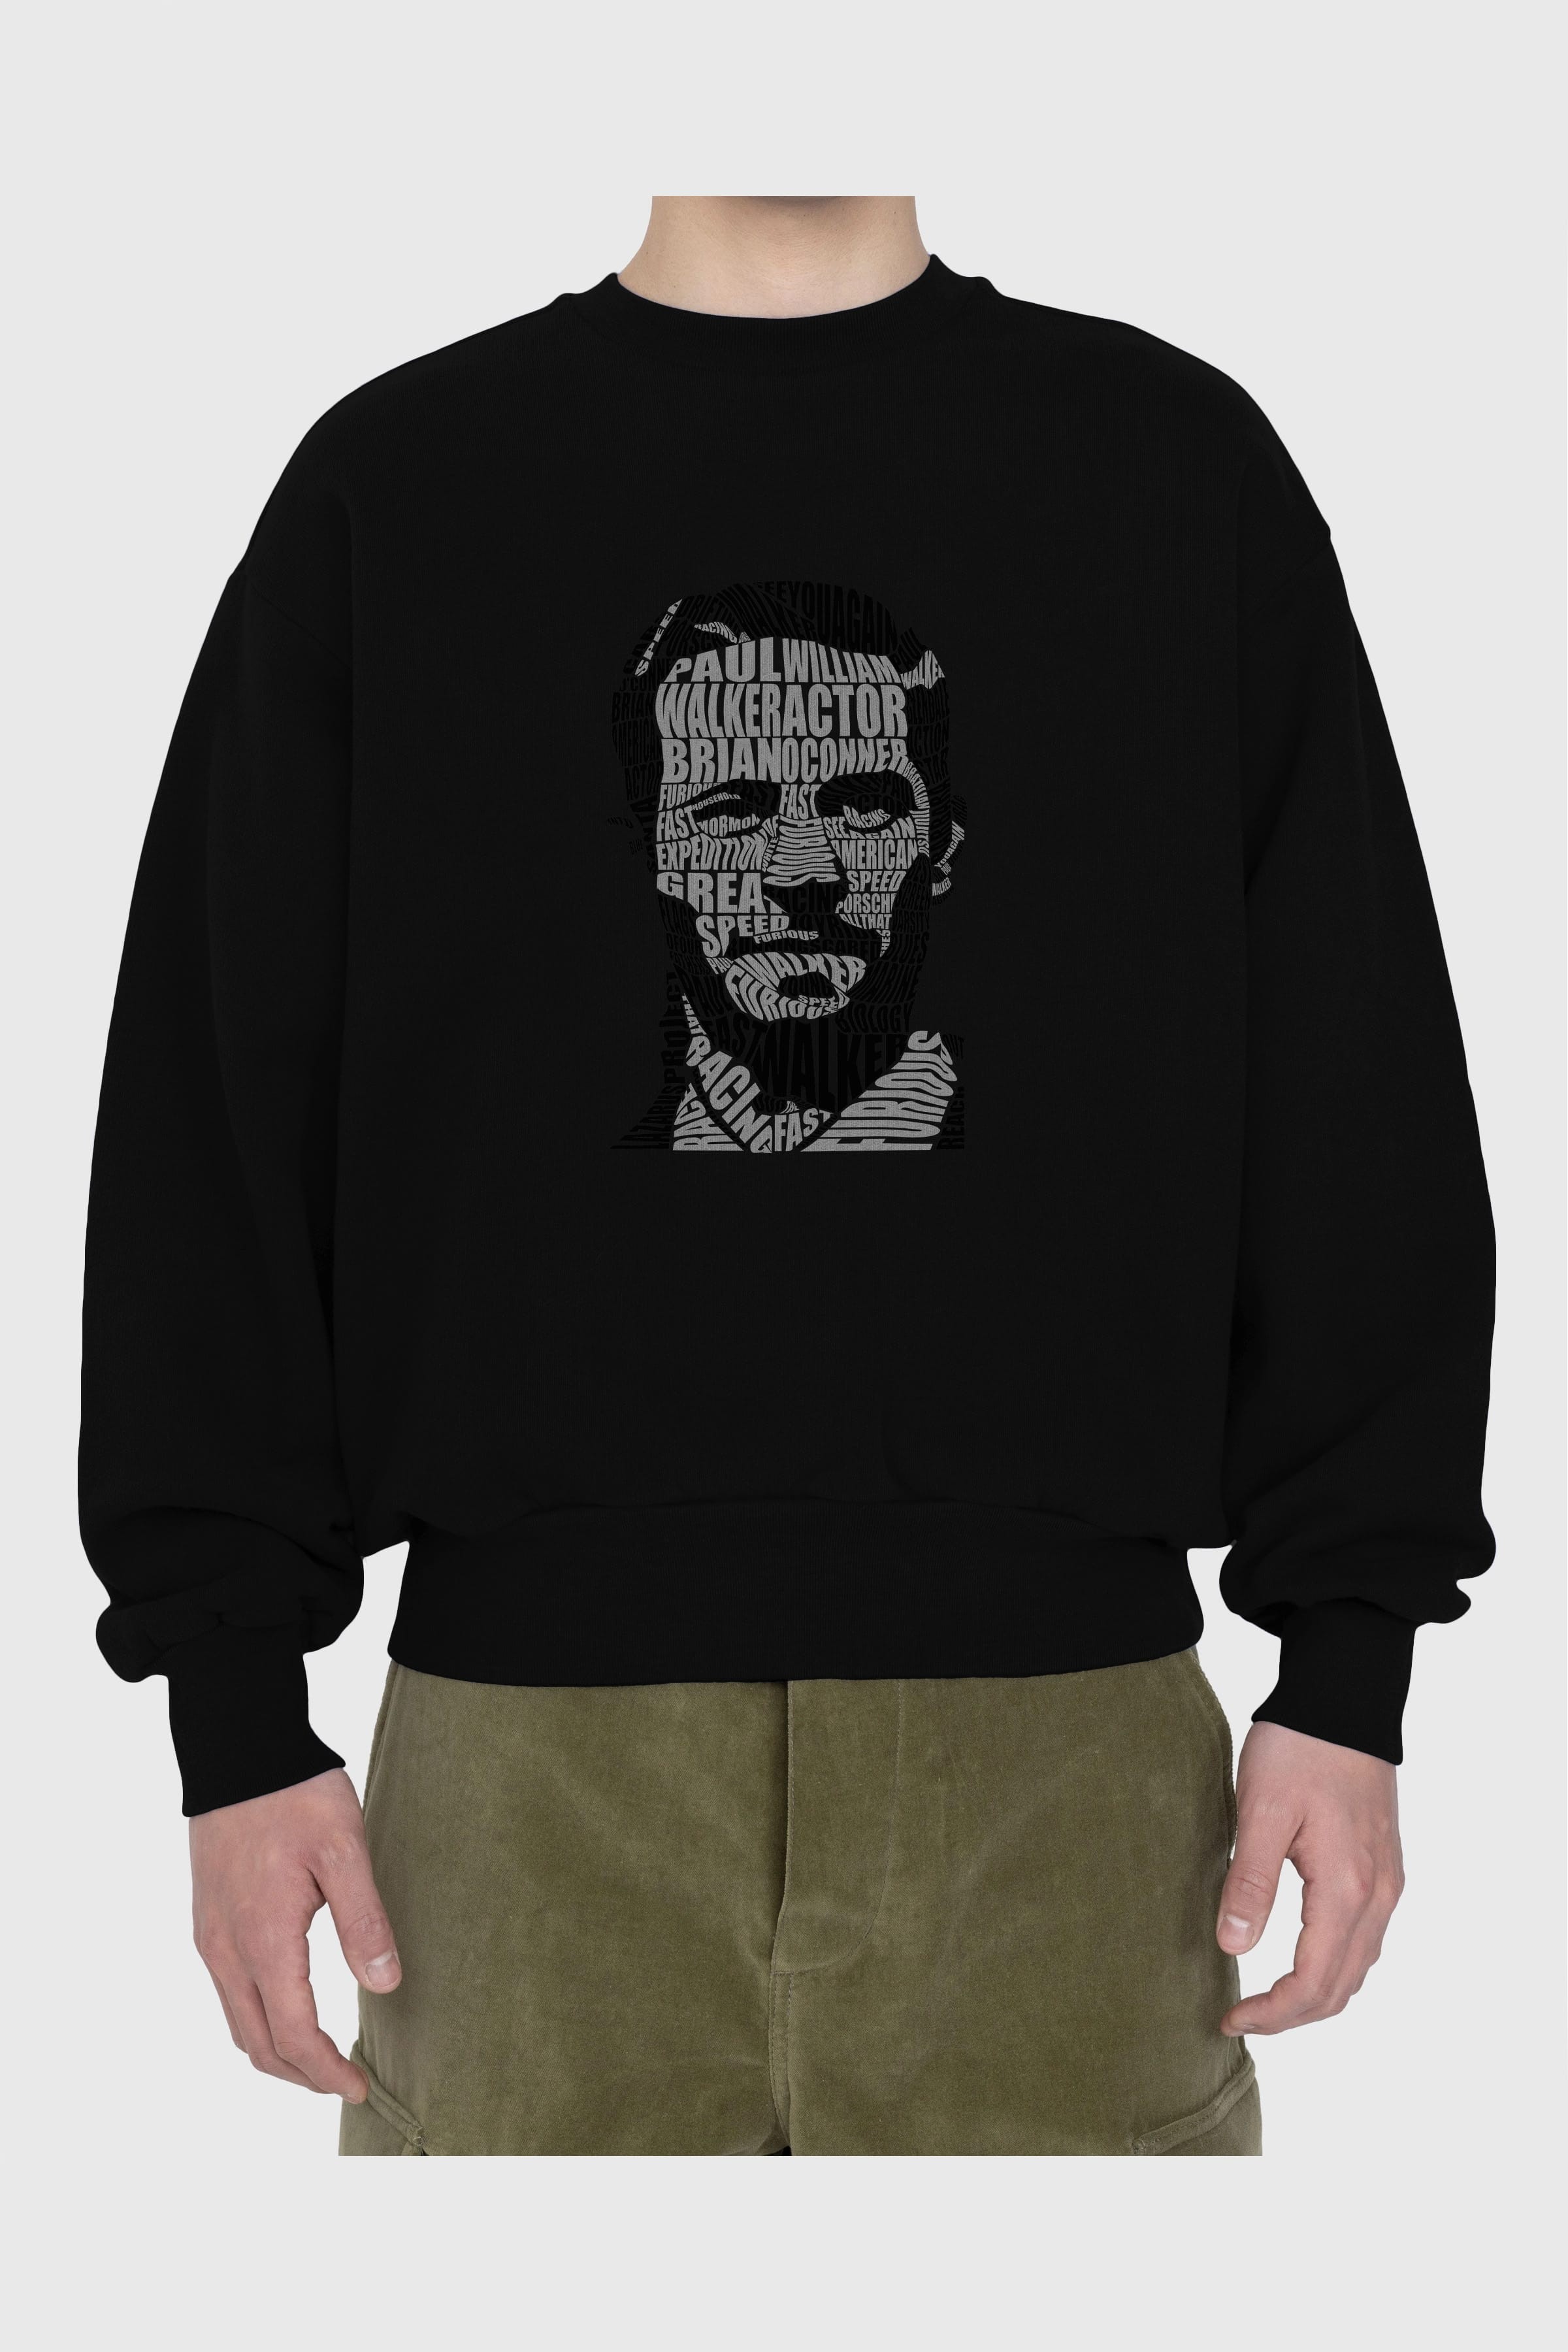 Paul Walker Calligram Ön Baskılı Oversize Sweatshirt Erkek Kadın Unisex